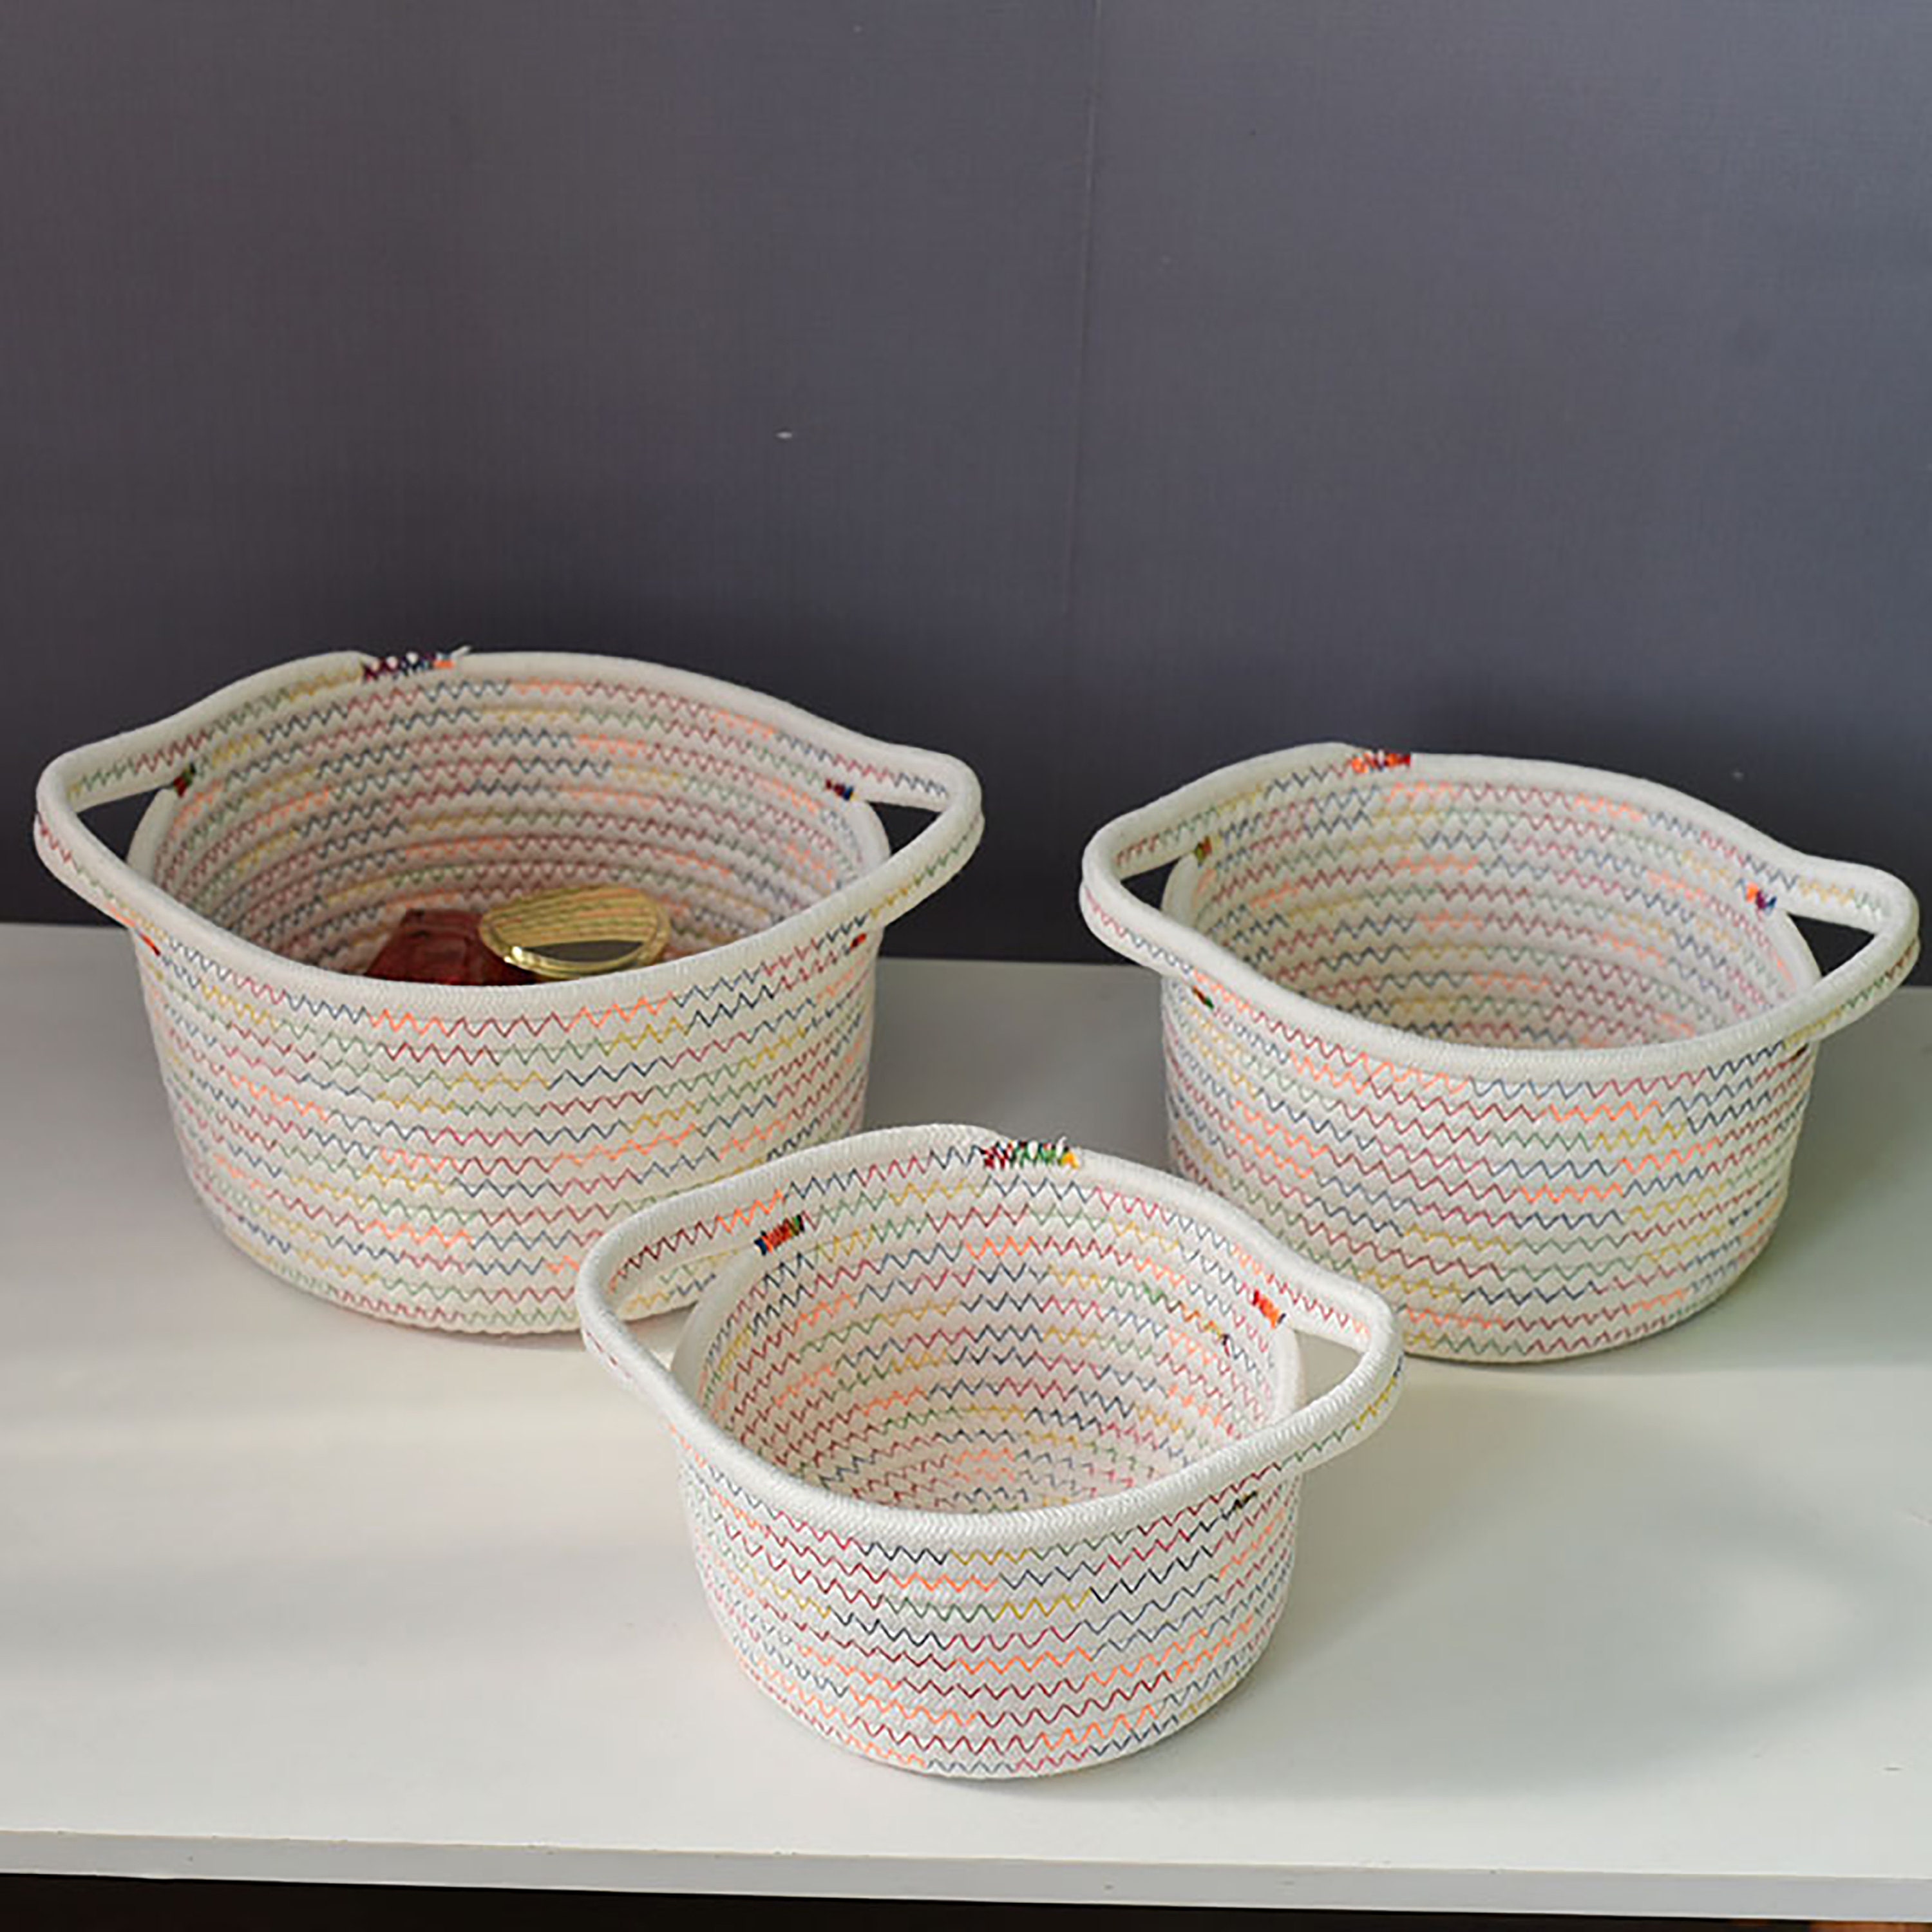 â€ŽTemary Temary Small Fabric Storage Baskets for Organizing